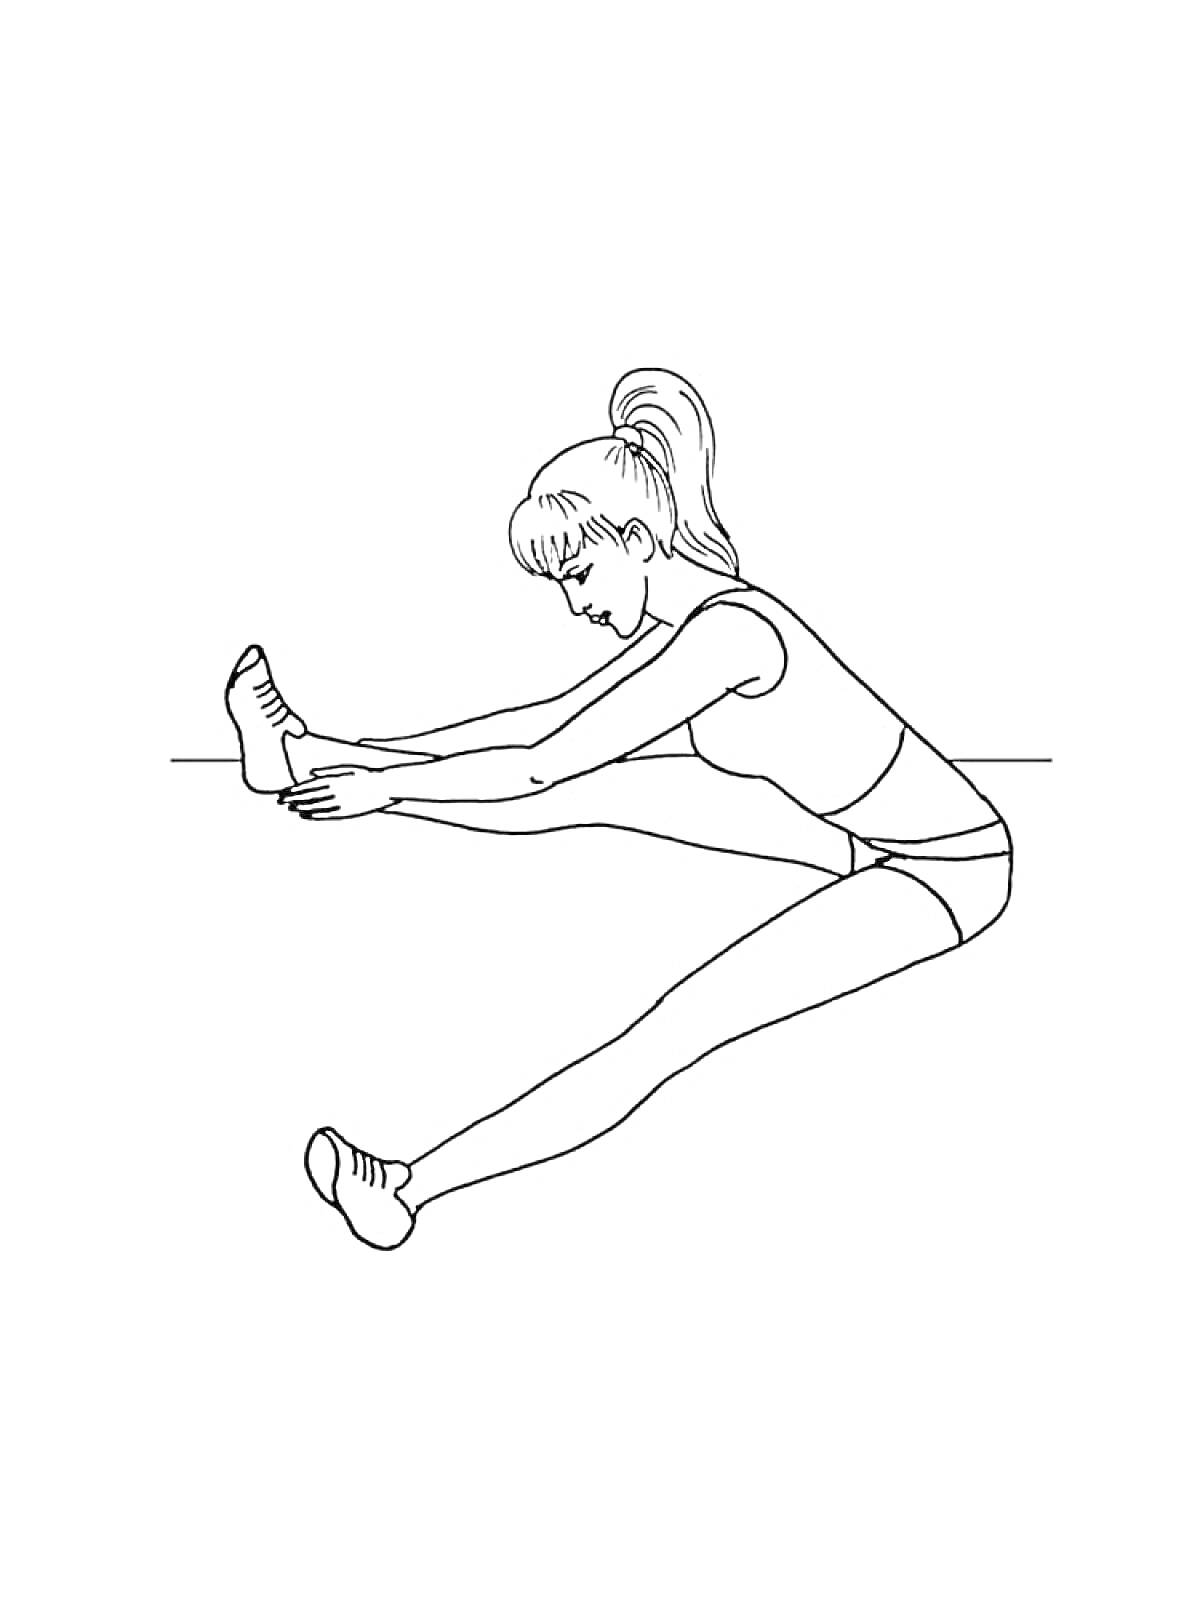 Женщина делает упражнение на растяжку, касаясь стопы вытянутой ноги